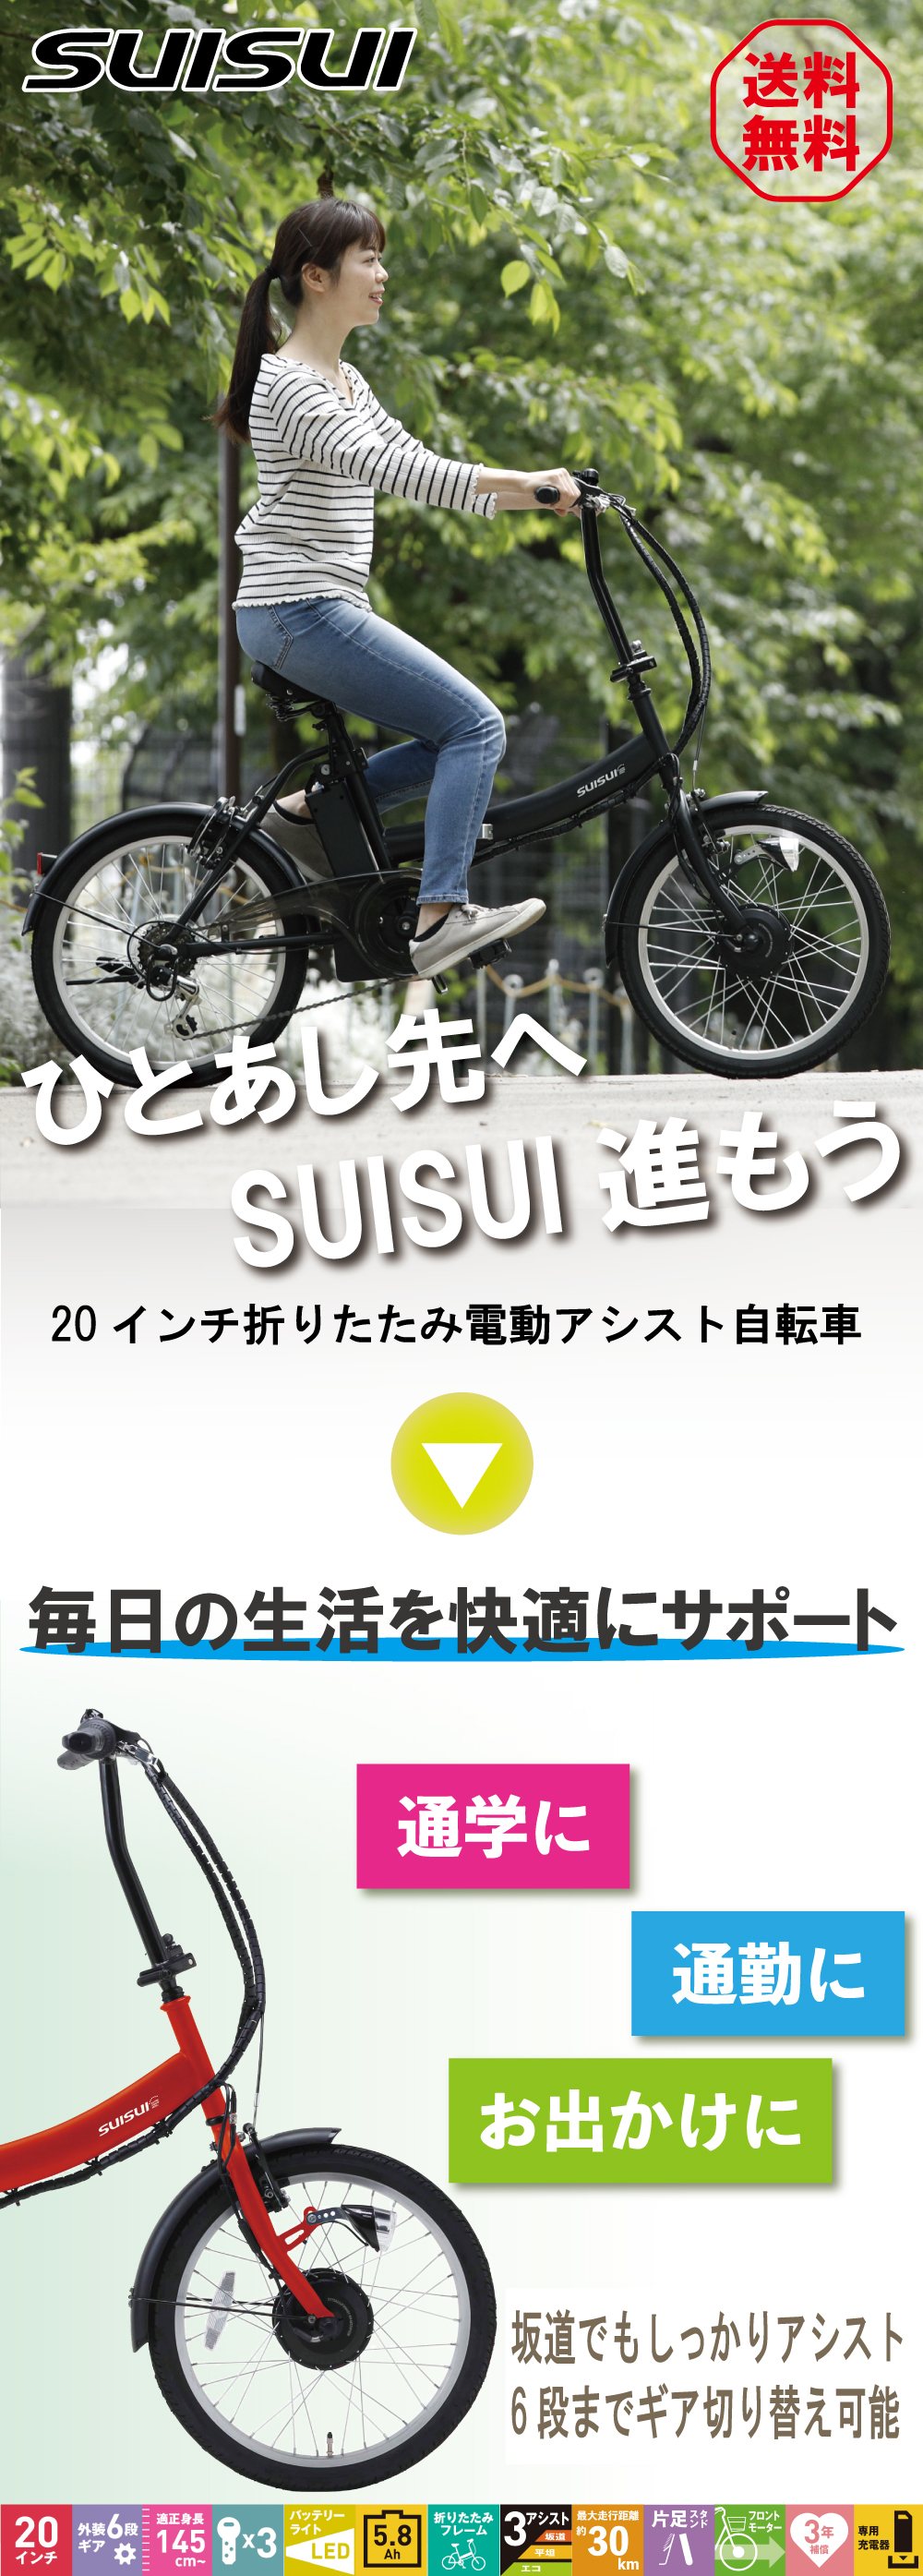 38857円 【60%OFF!】 SUISUI Street 20インチ電動アシスト折畳自転車 6段変速 レッド BM-AZ300-RE 1台